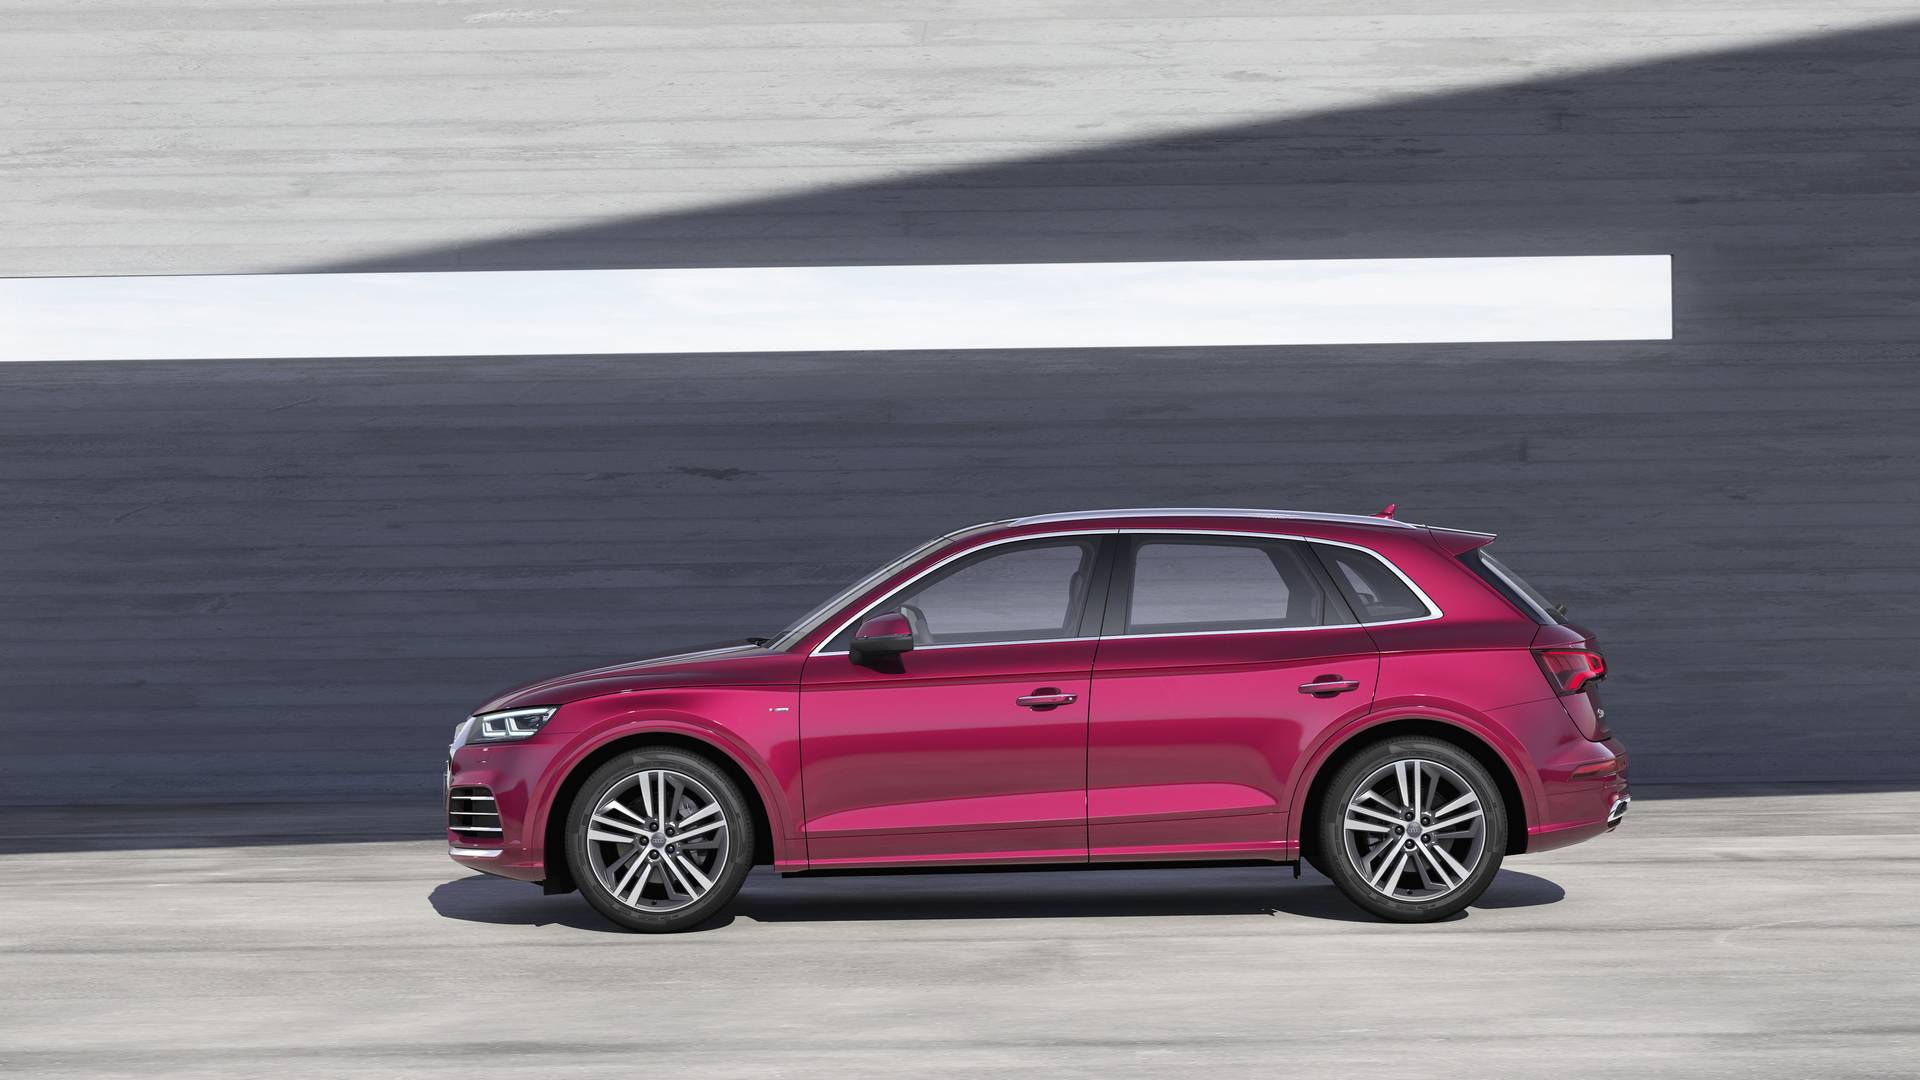 Audi Q5L будет предлагаться эксклюзивно для китайского рынка. Он был представлен на Пекинском автосалоне 2018 на этой неделе и является последней моделью, которая будет отвечать за взыскательные вкусы китайских клиентов.